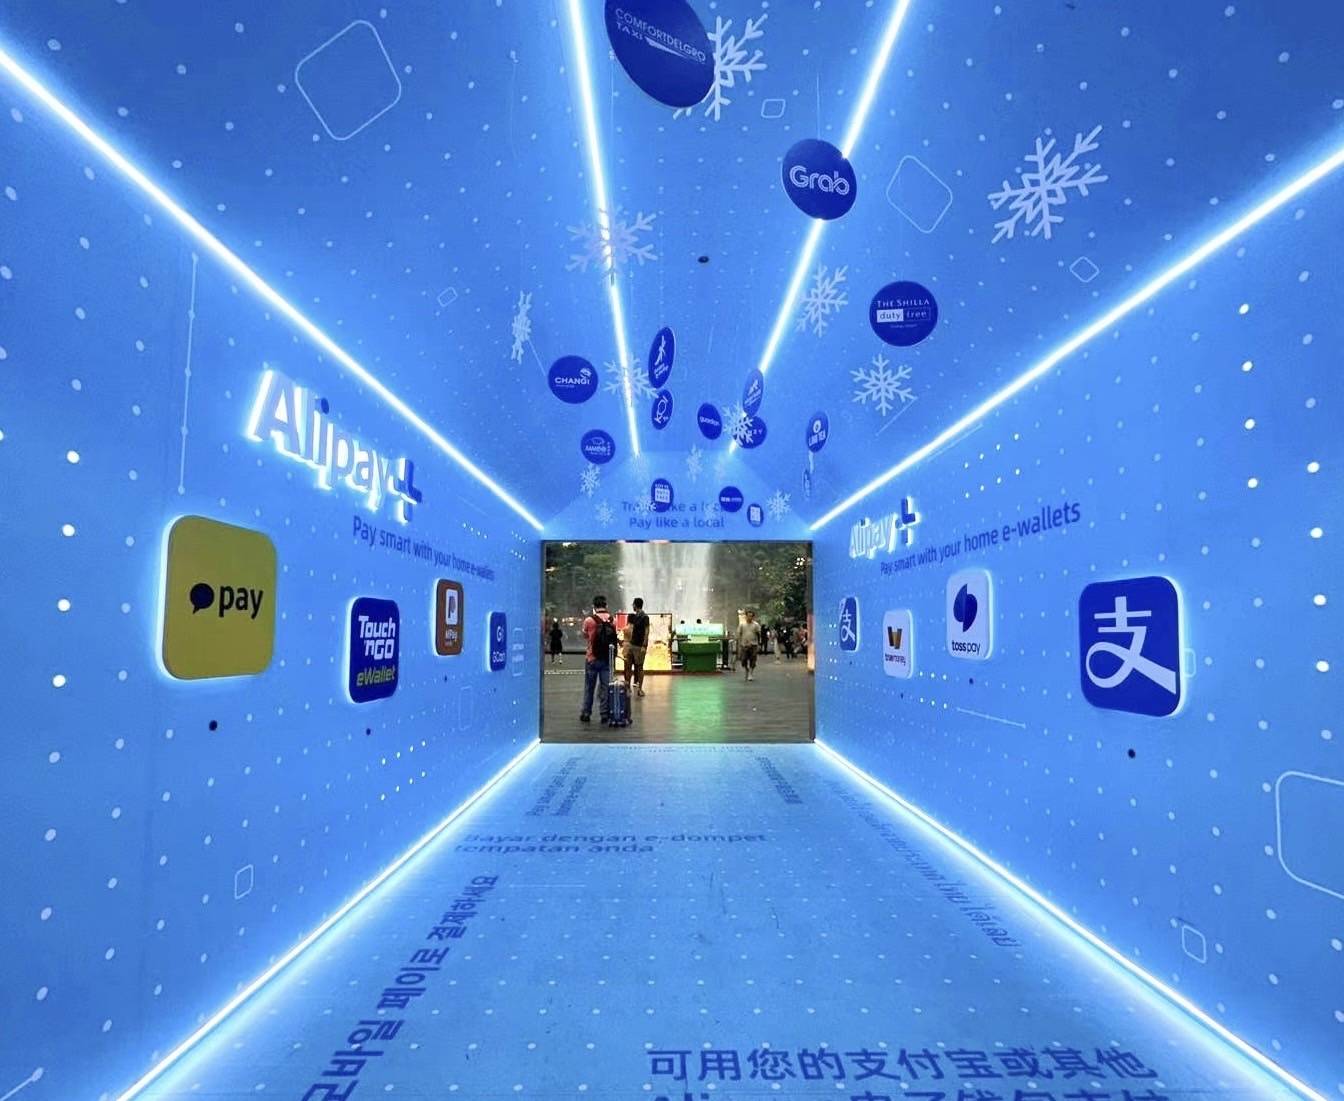 Alipay+ จับมือพาร์ทเนอร์อีวอลเล็ท ขับเคลื่อนการท่องเที่ยวอย่างยั่งยืนในแคมเปญระดับโลกส่งท้ายปี